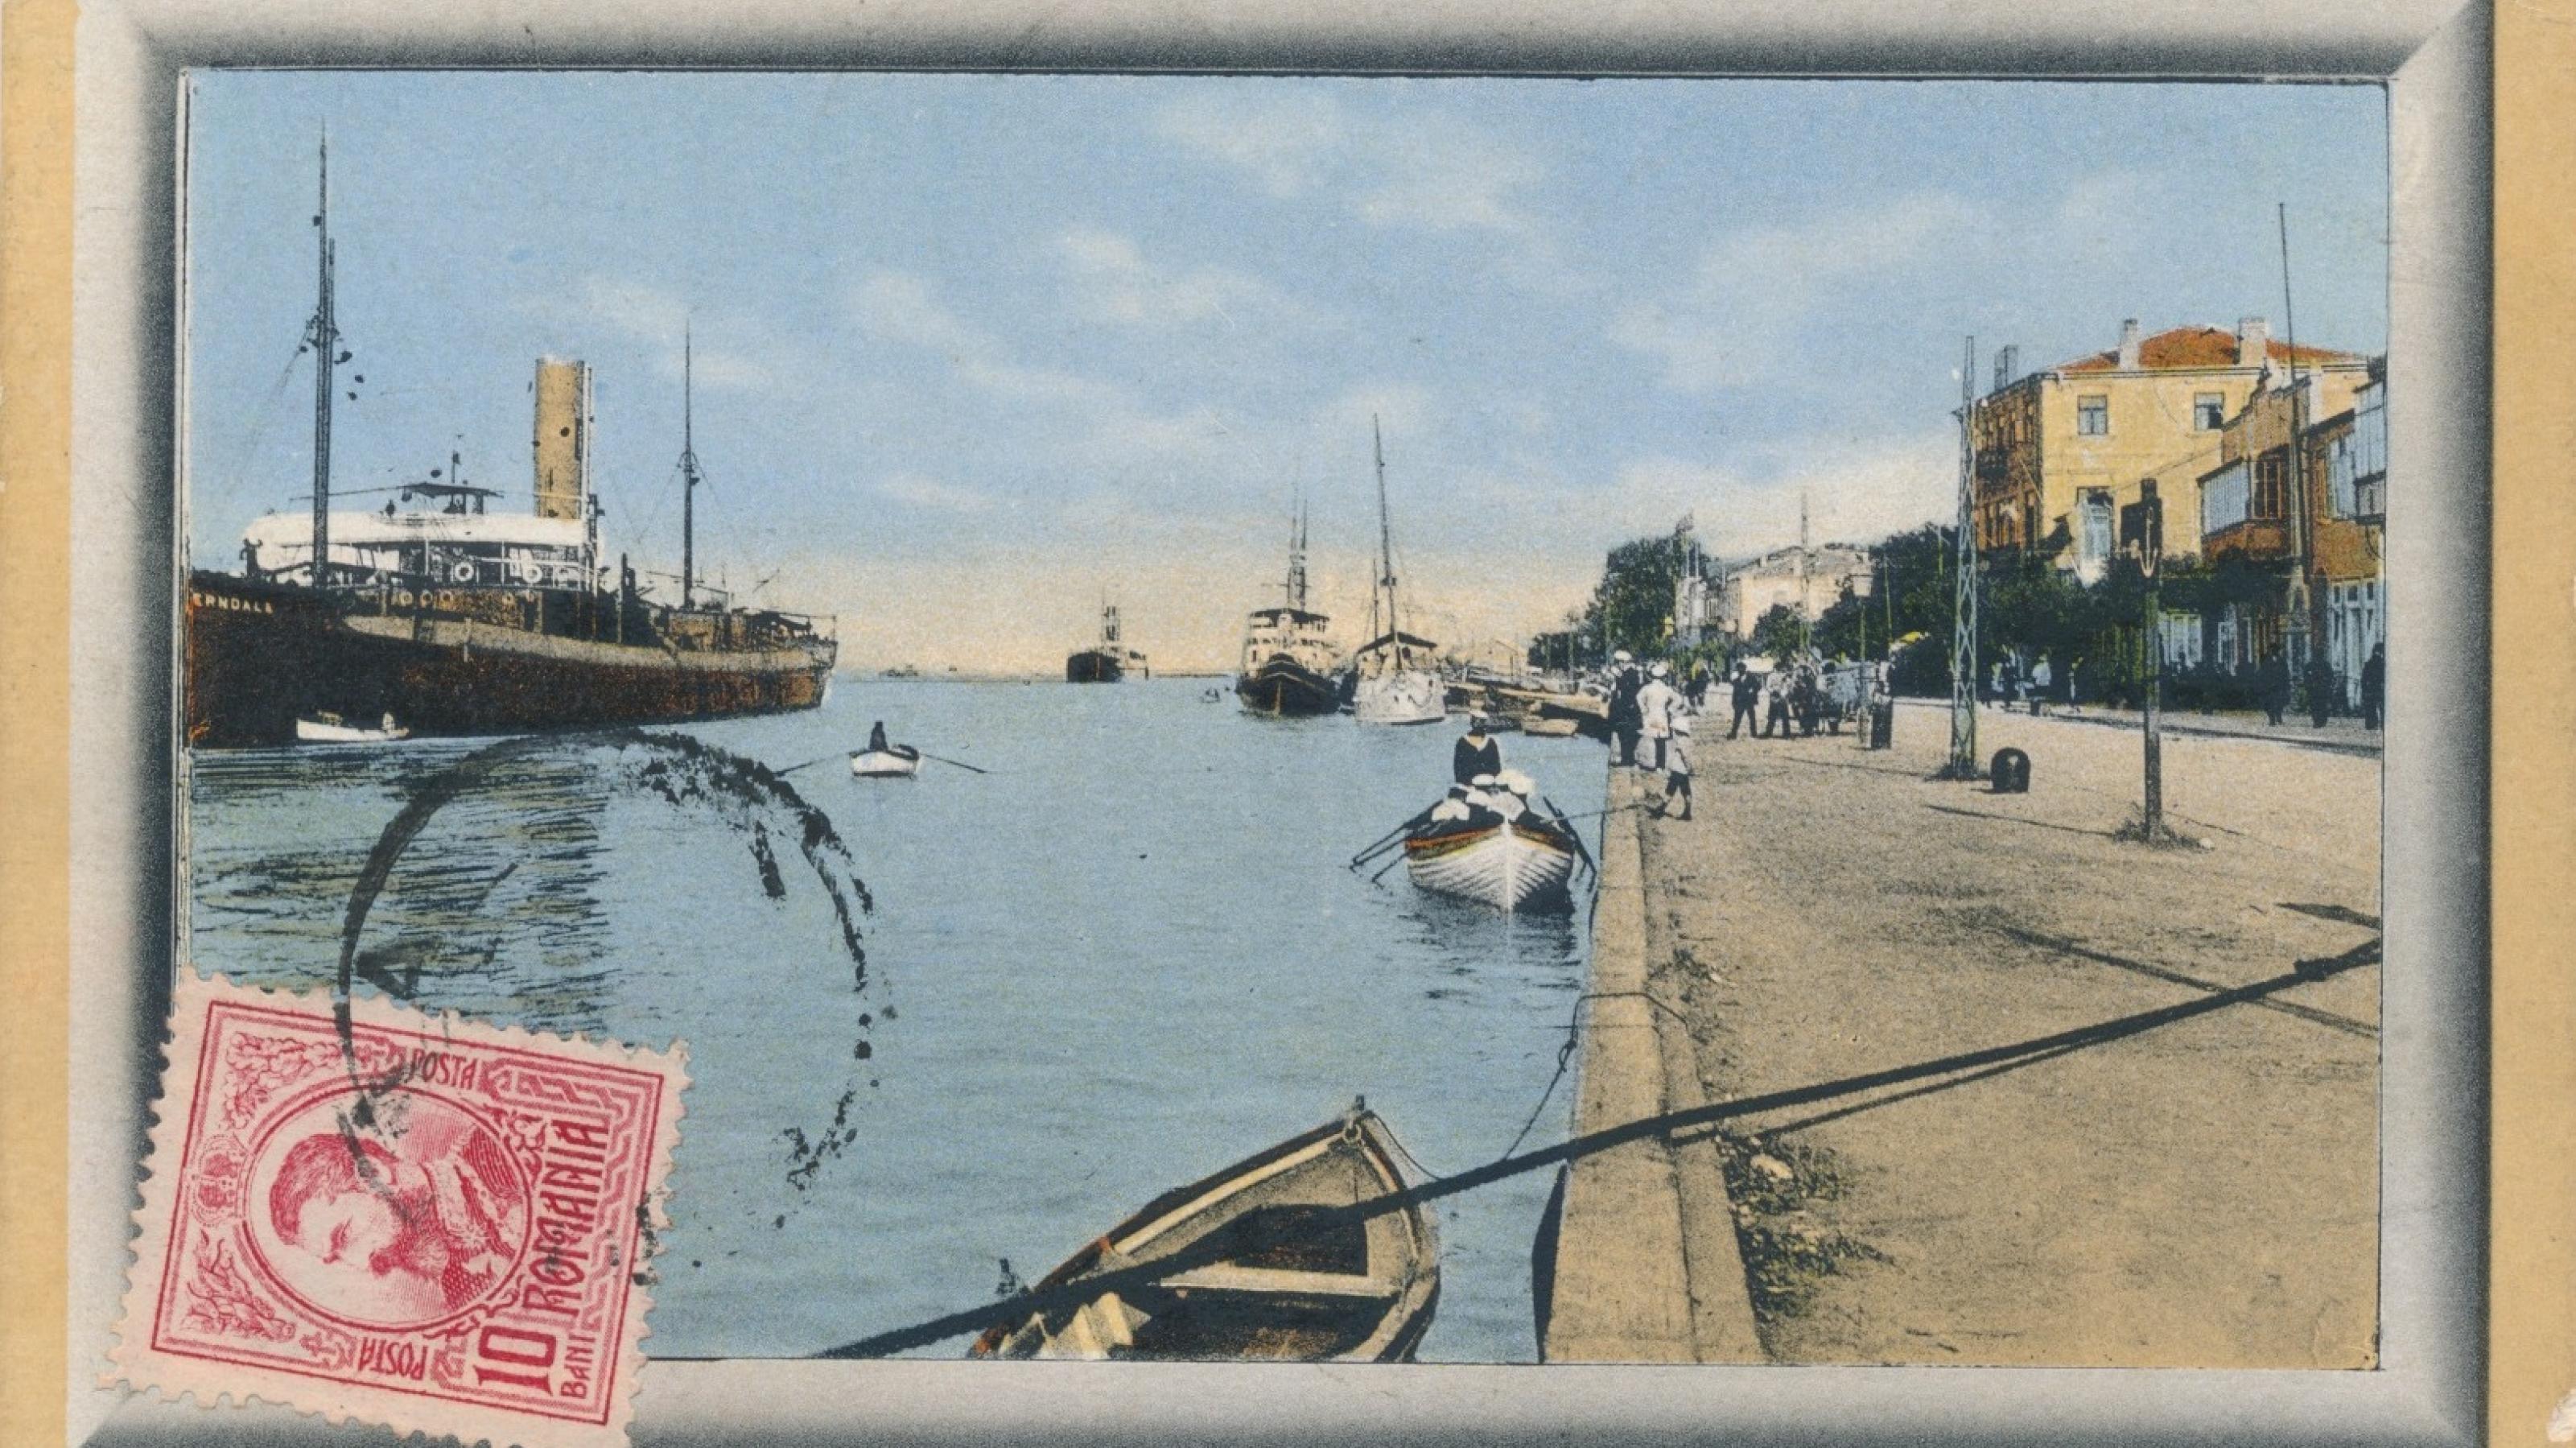 Alte illustrierte Postkarte mit Briefmarke mit Fluss, Häusern, Schiffen, Menschen